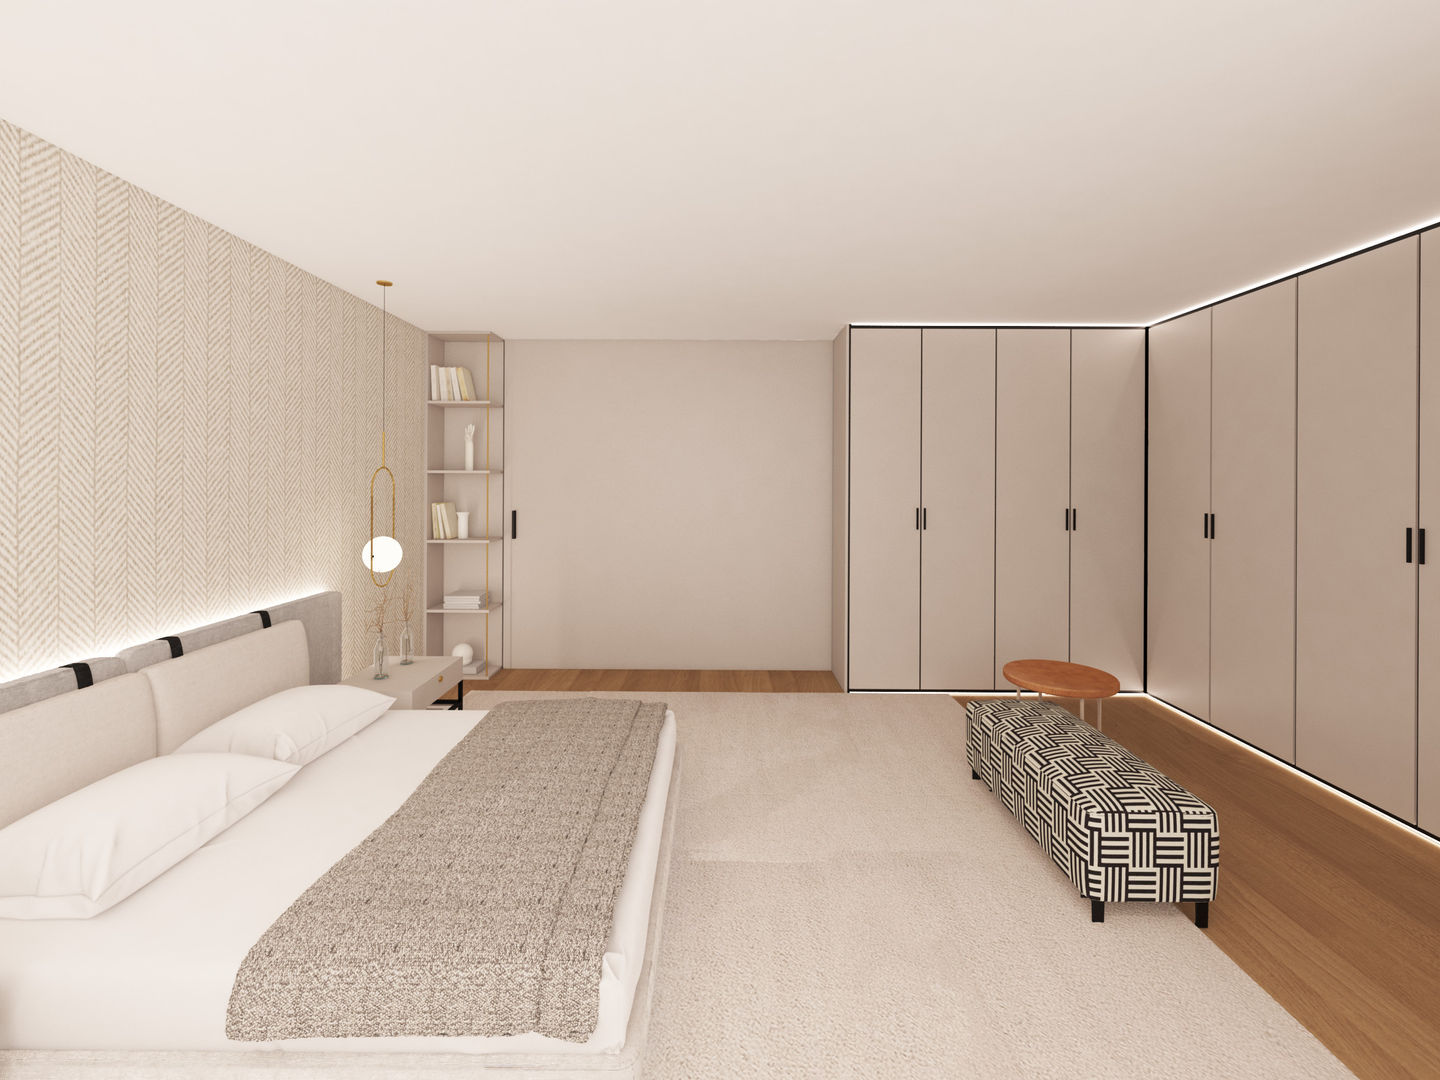 Moradia em Tagilde, Vizela - 2020, MIA arquitetos MIA arquitetos ห้องนอนขนาดเล็ก